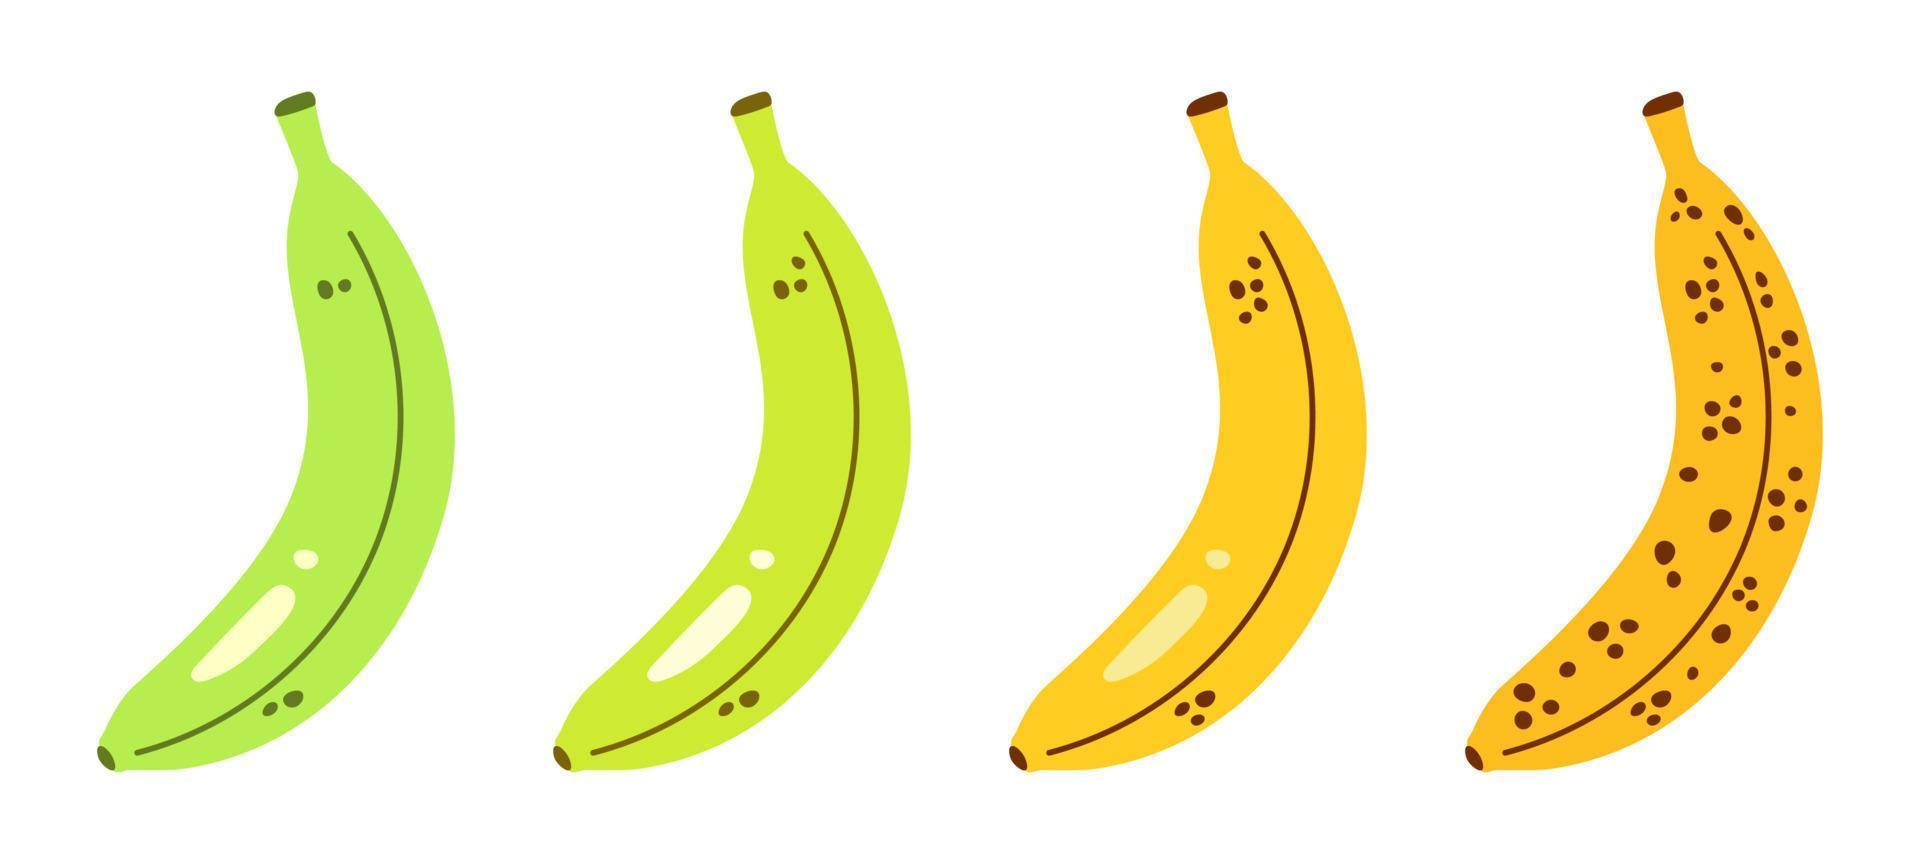 vector set met bananen. rijpe stadia van bananen van onrijp tot overrijp. rijpingsproces van bananen. groene en gele bananen in plat design.